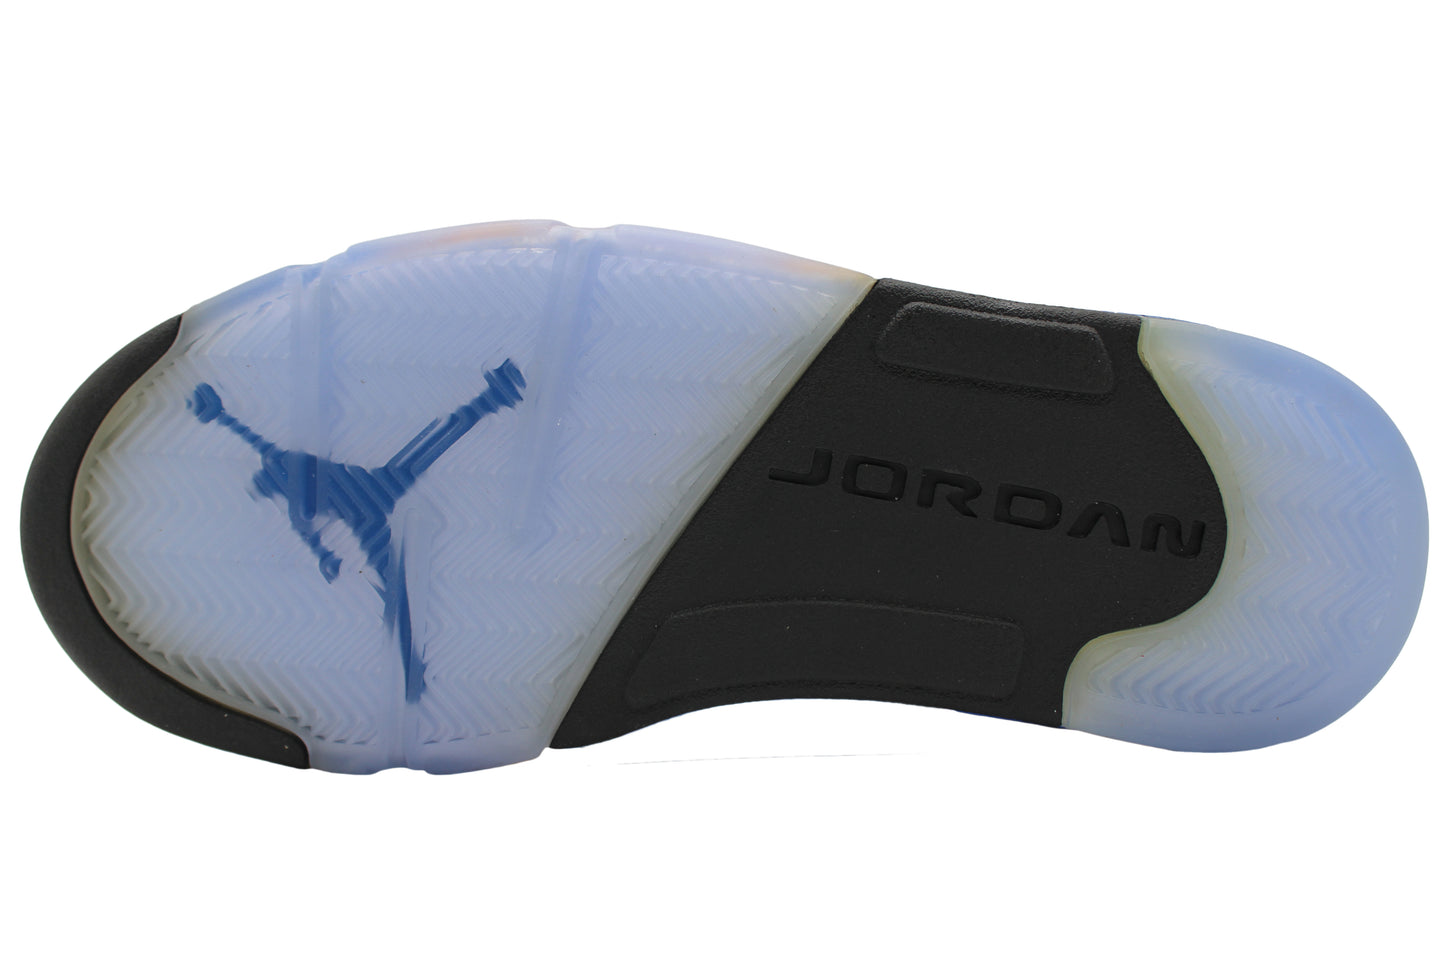 Air Jordan 5 Retro “Laney”